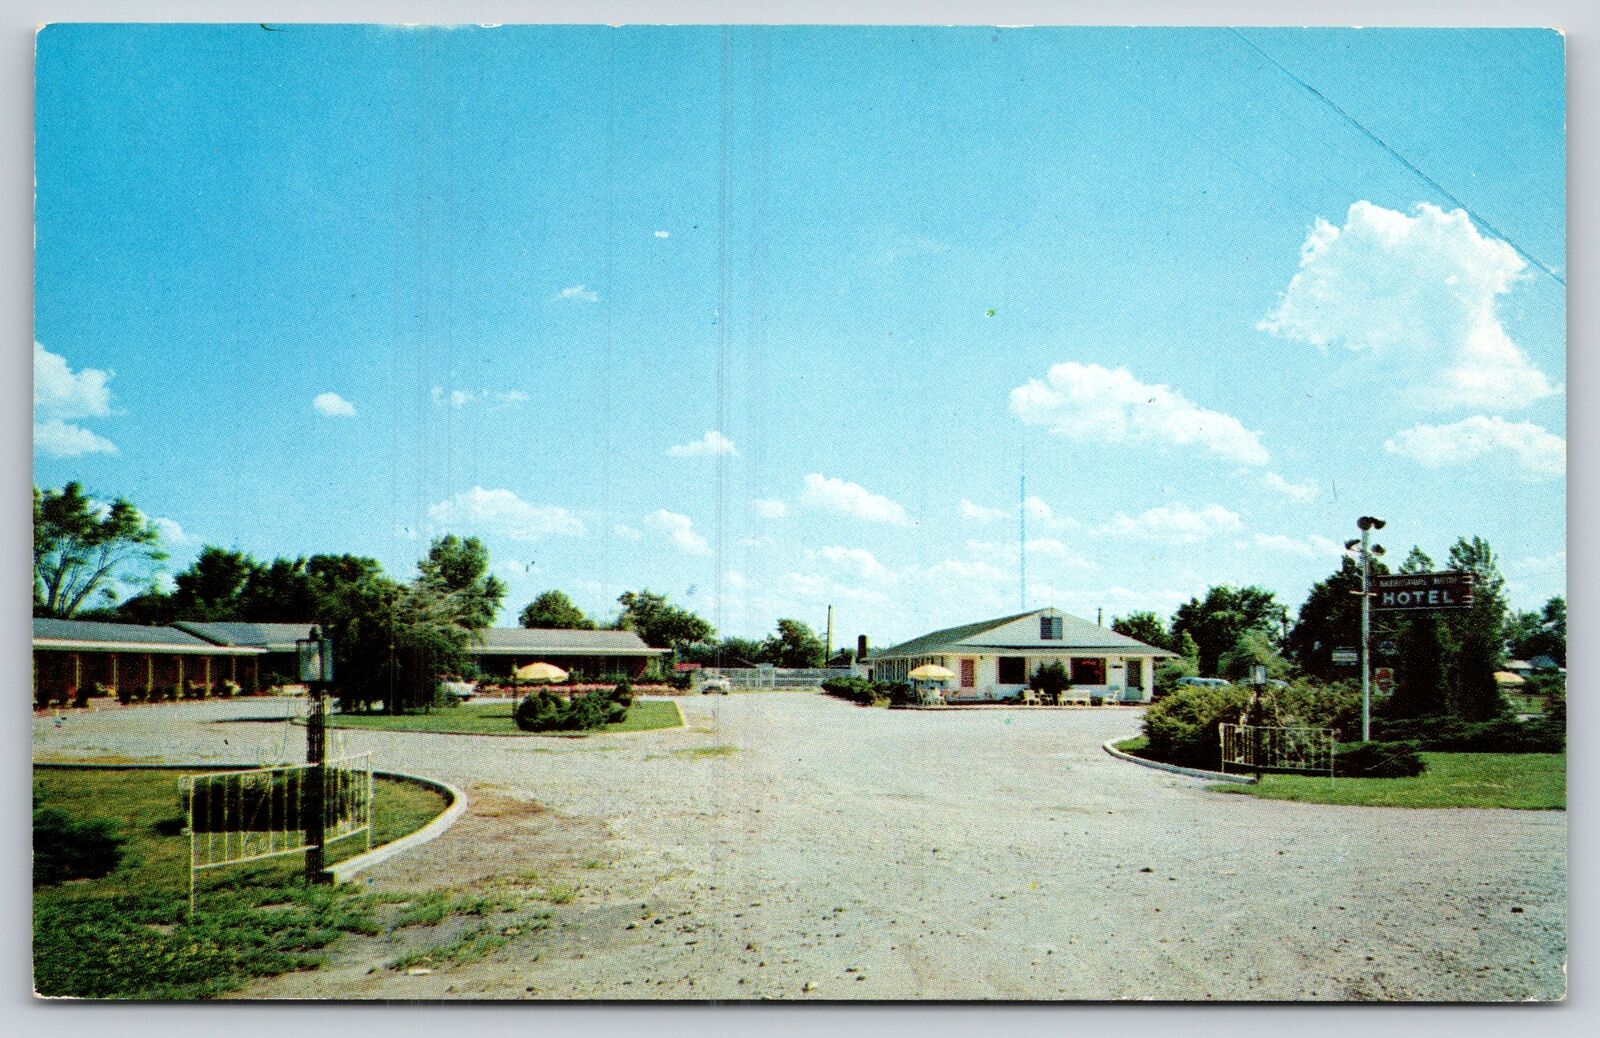 Motel~Harrisburg Motor Hotel Harrisburg Illinois~Vintage Postcard